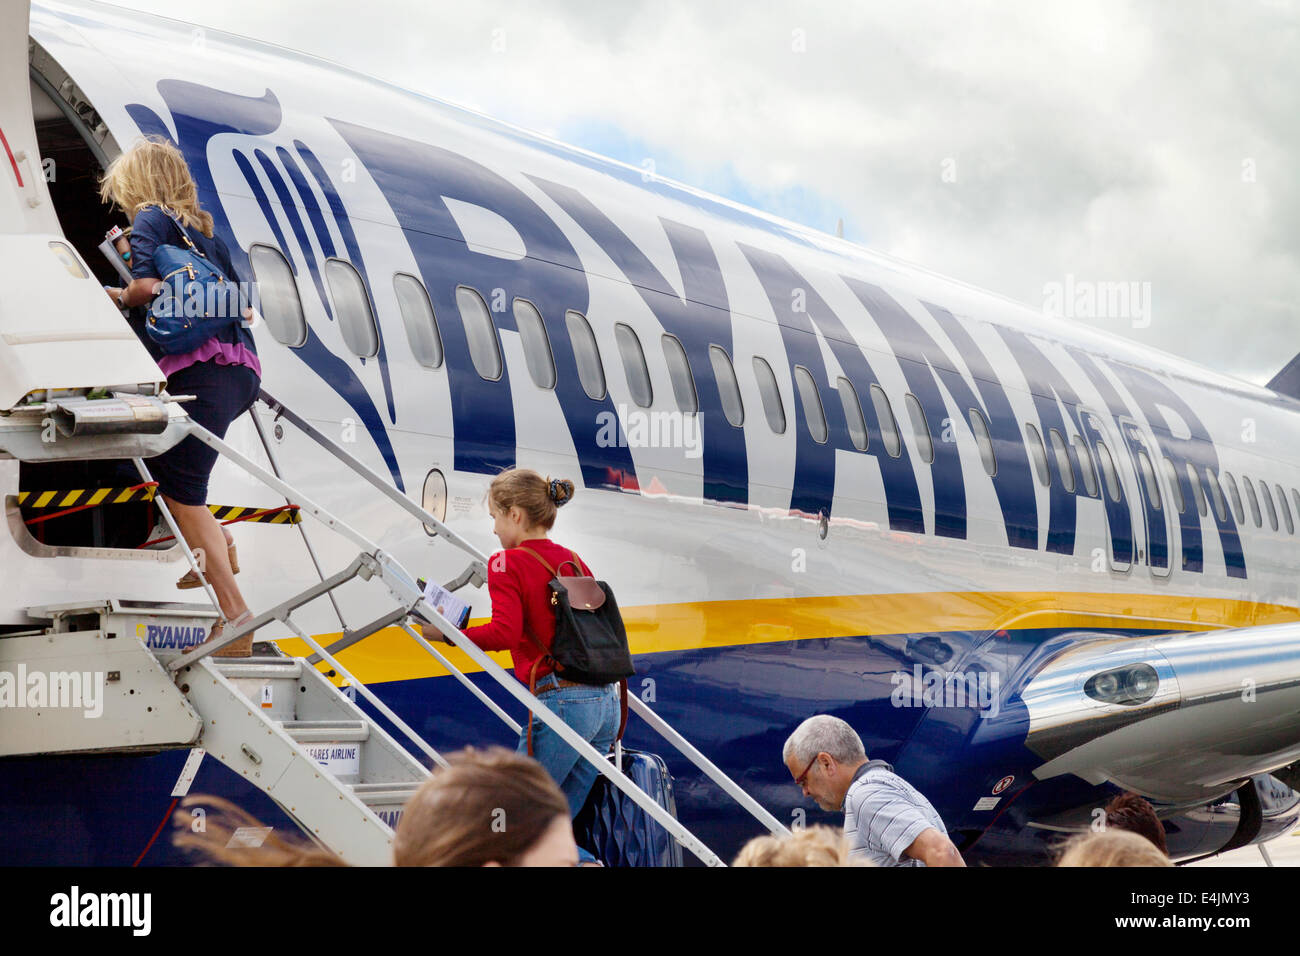 Fluggästen ein Ryanair-Flugzeug am Flughafen Stansted, London UK Stockfoto